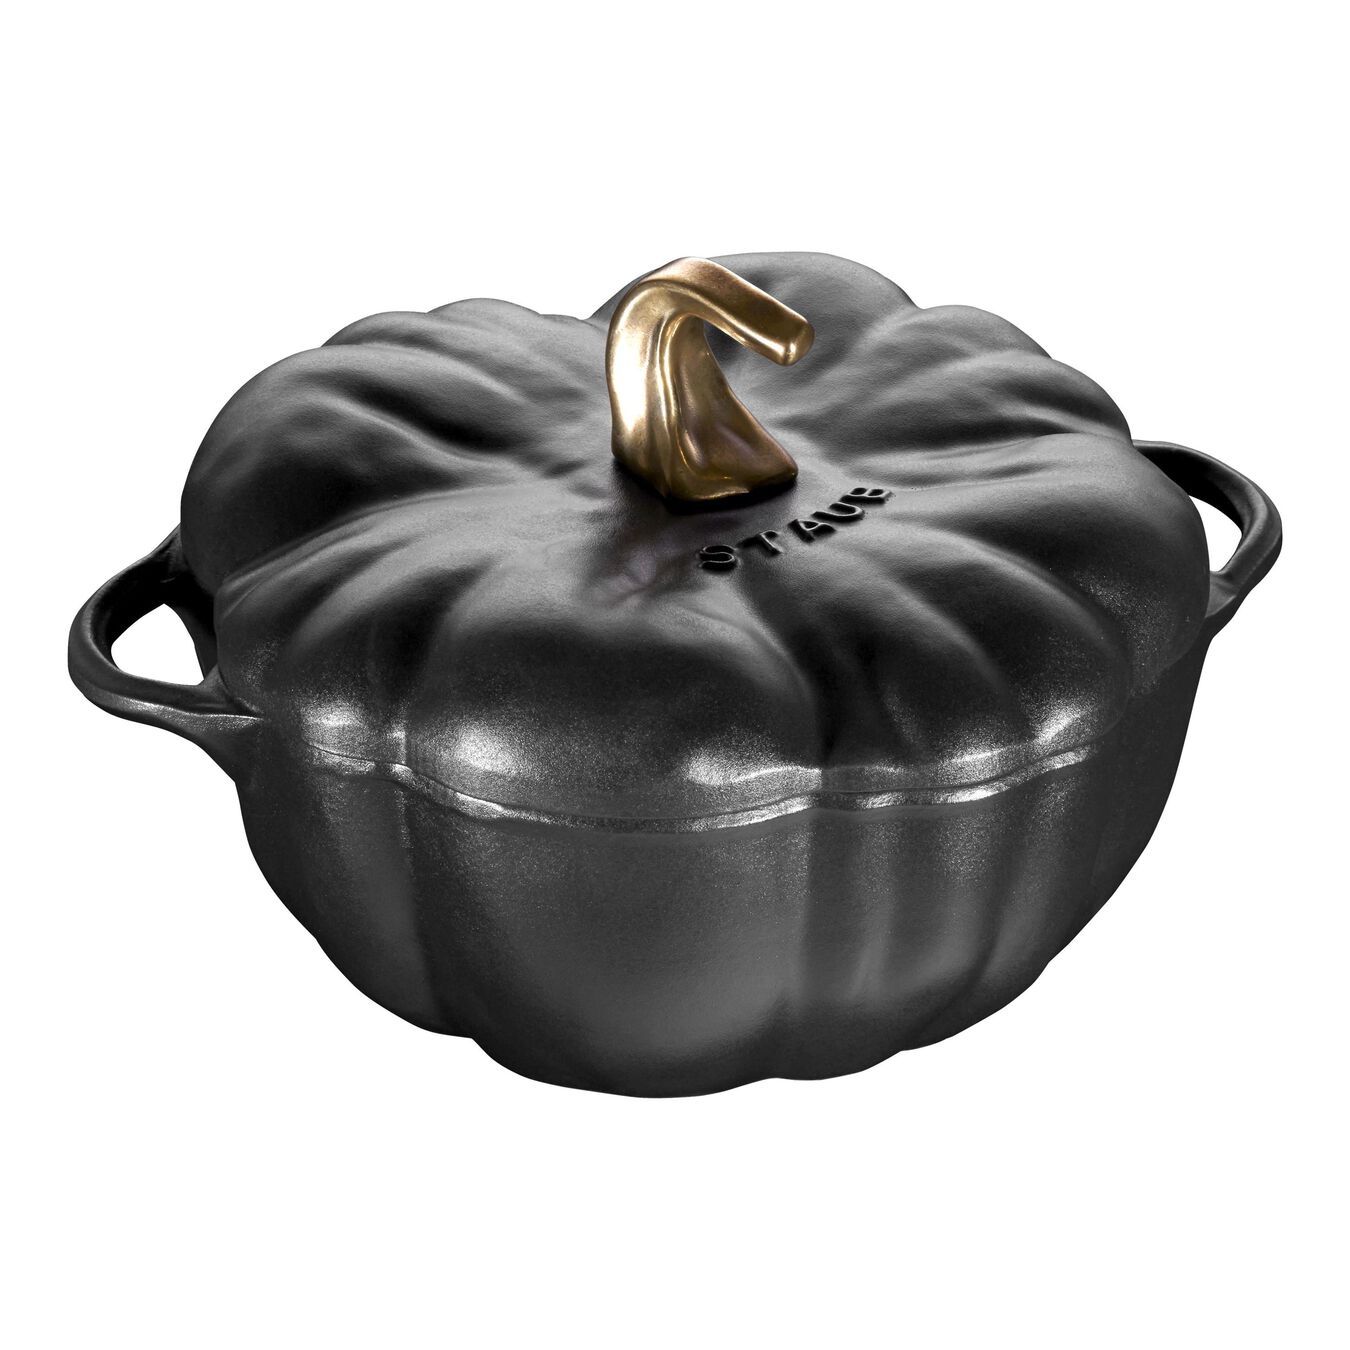 3.5 l cast iron pumpkin Cocotte, black,,large 1